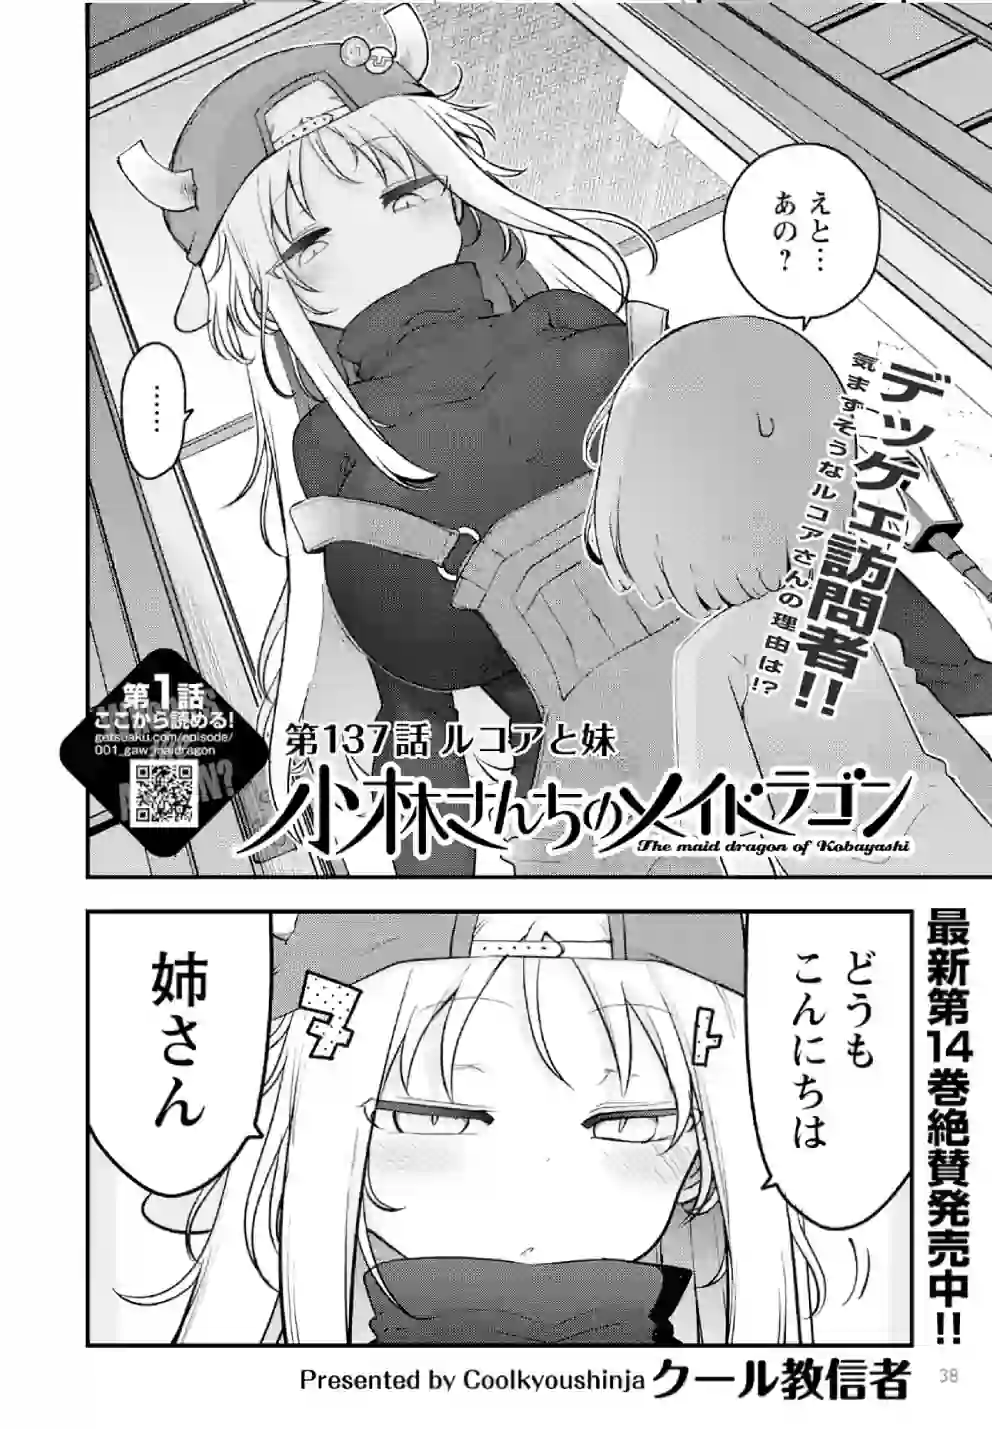 Irmã da Lucoa aparece no mangá de Kobayashi-san